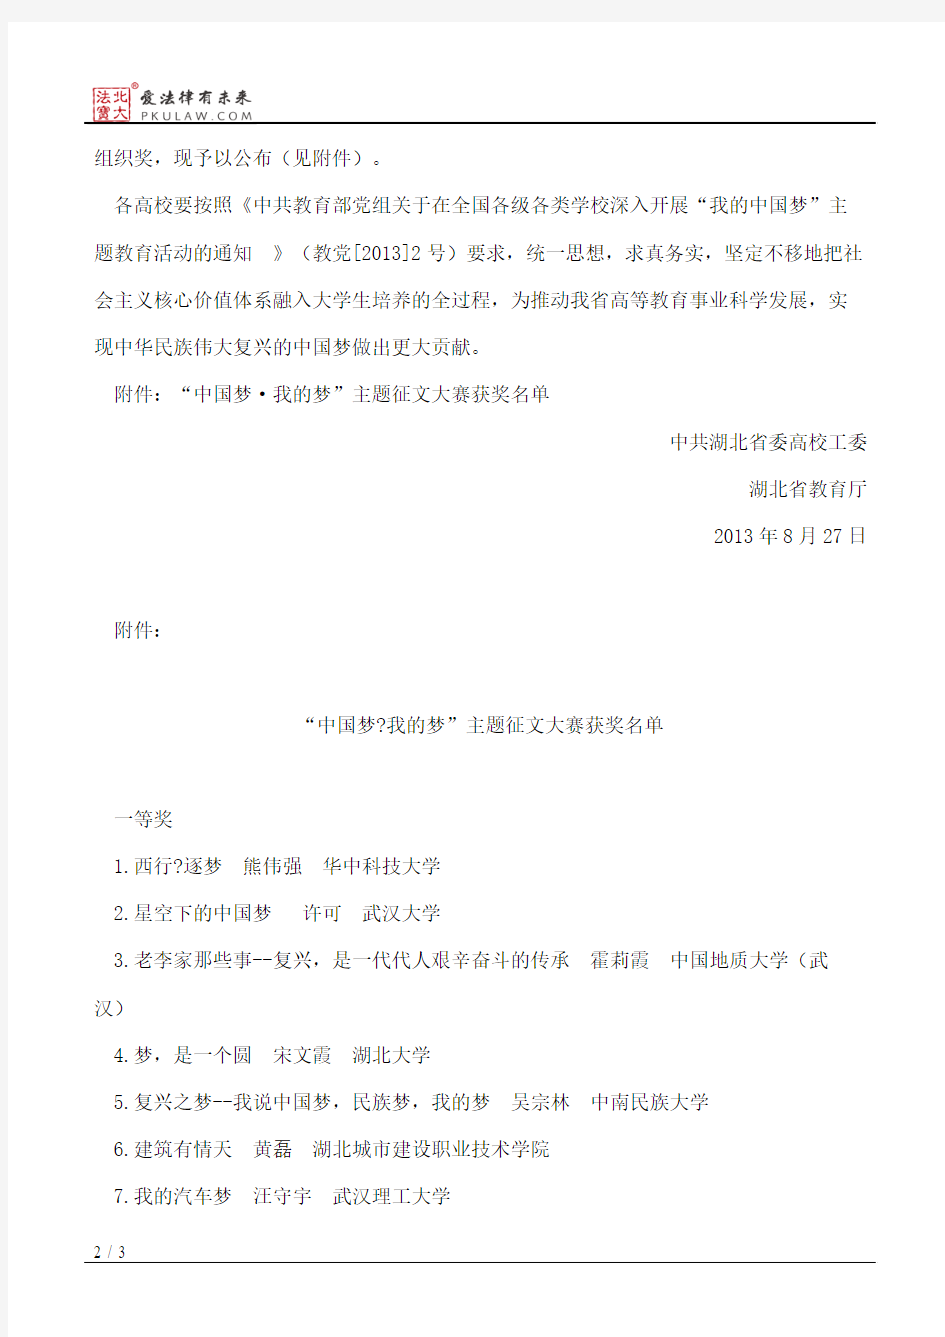 中共湖北省委高校工委、湖北省教育厅关于公布“中国梦·我的梦”